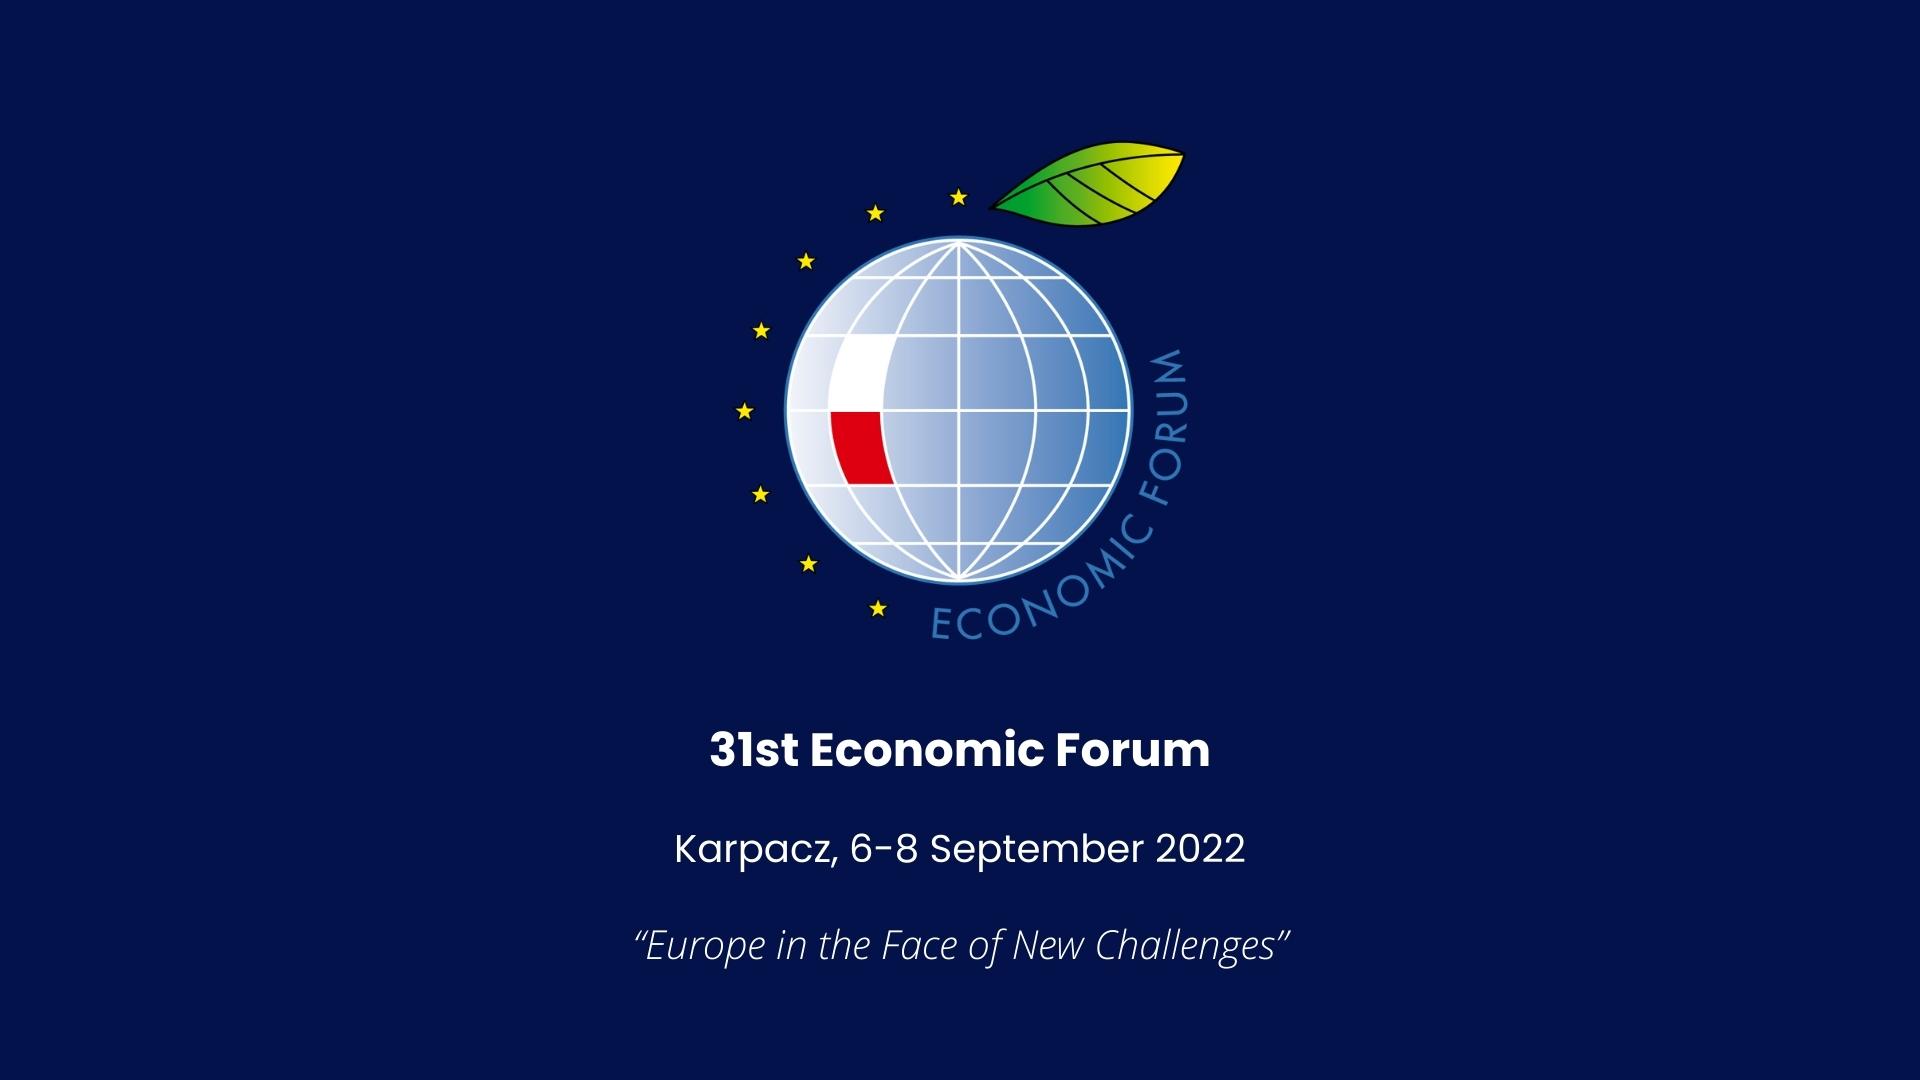 L’Agenzia Spaziale Italiana al 31° Economic Forum di Karpacz